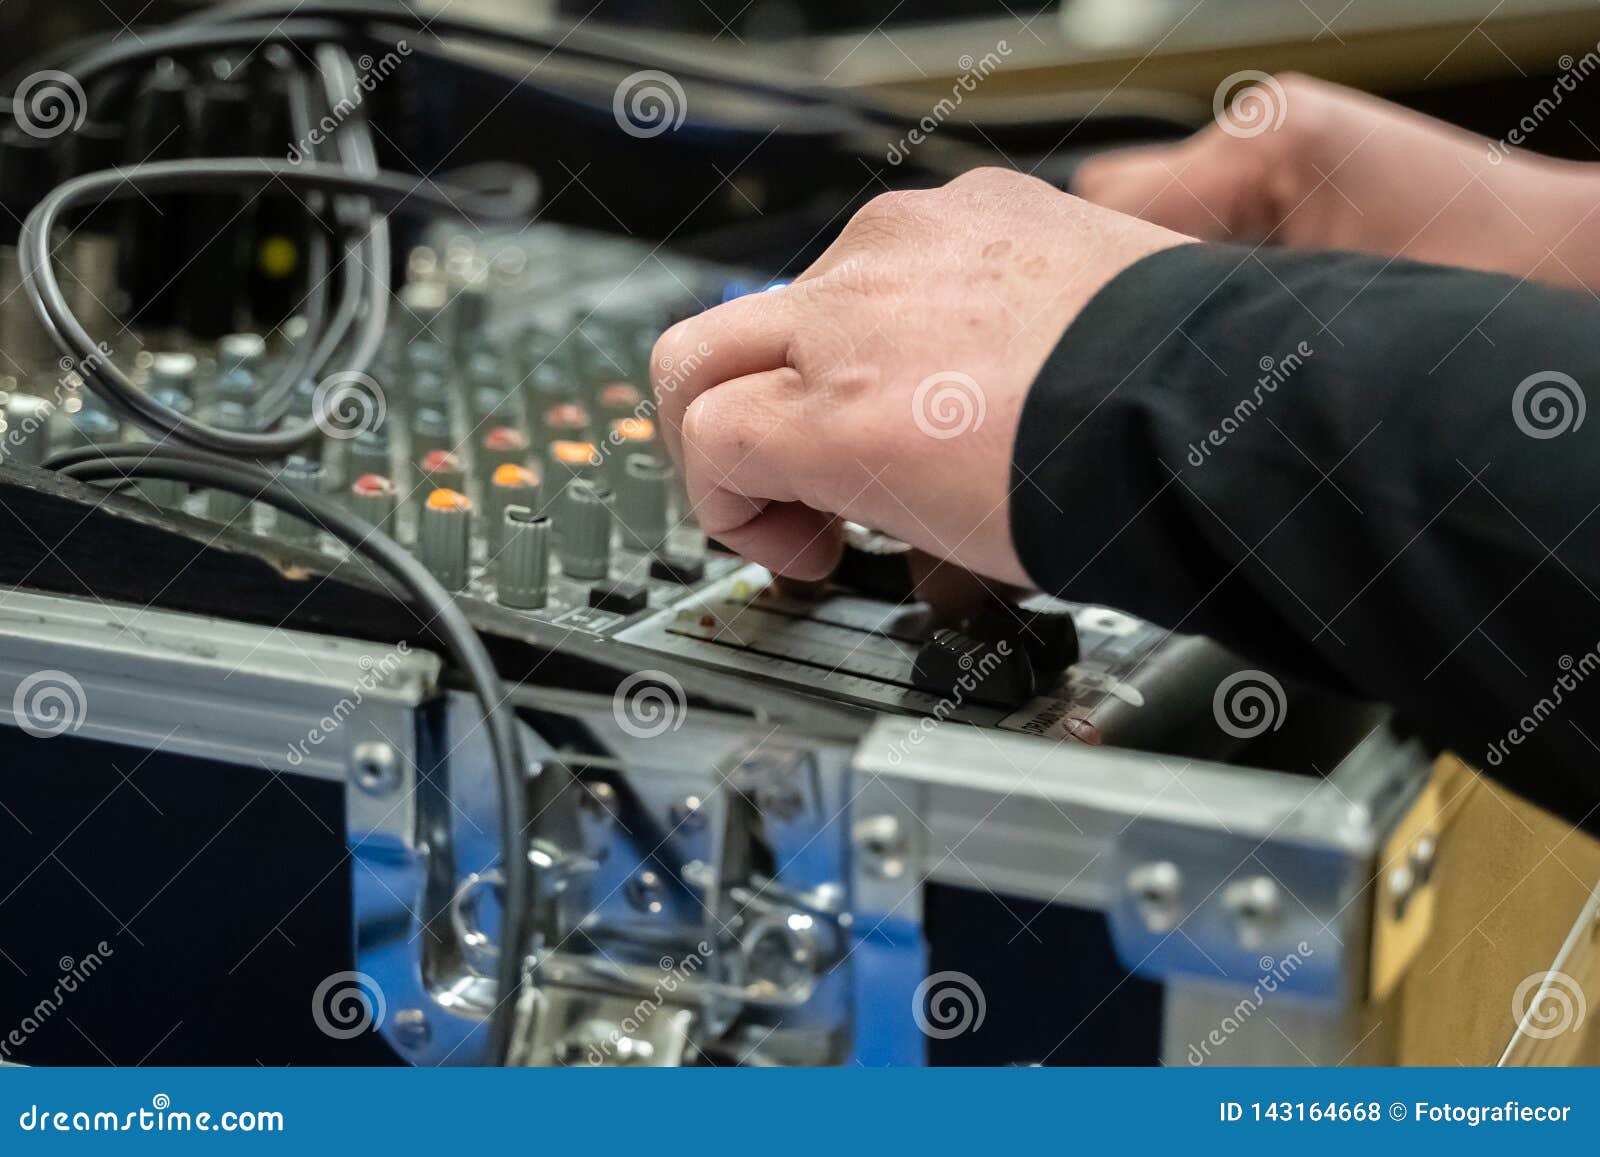 studio sound mixing board met handen aan de knoppen and selective focus